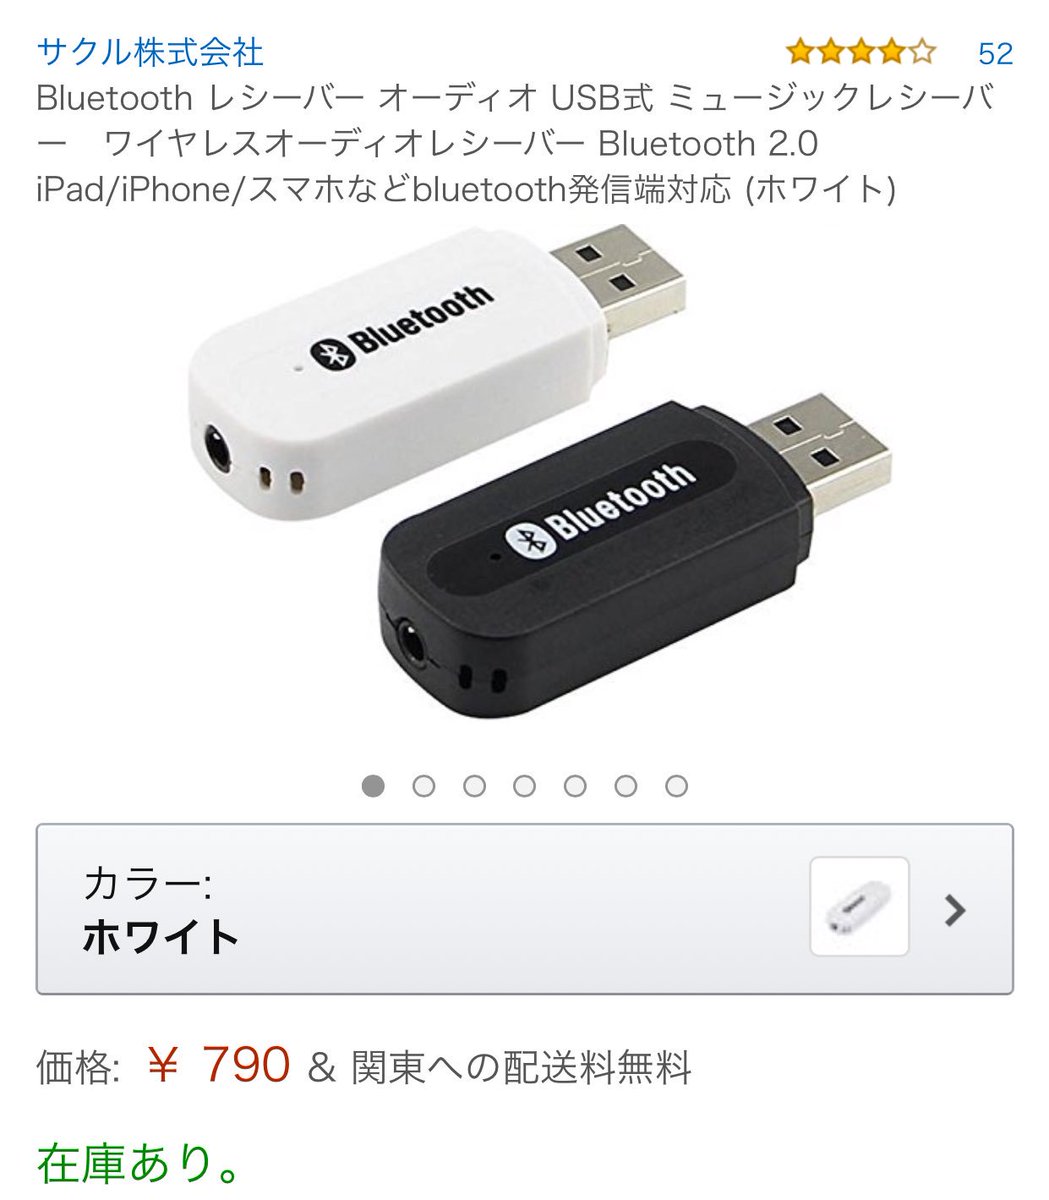 ギフト/プレゼント/ご褒美] Bluetooth 4.0 レシーバー オーディオ USB式 ミュージックレシーバー ワイヤレス iPad iPhone  スマホなどbluetooth発信端対応